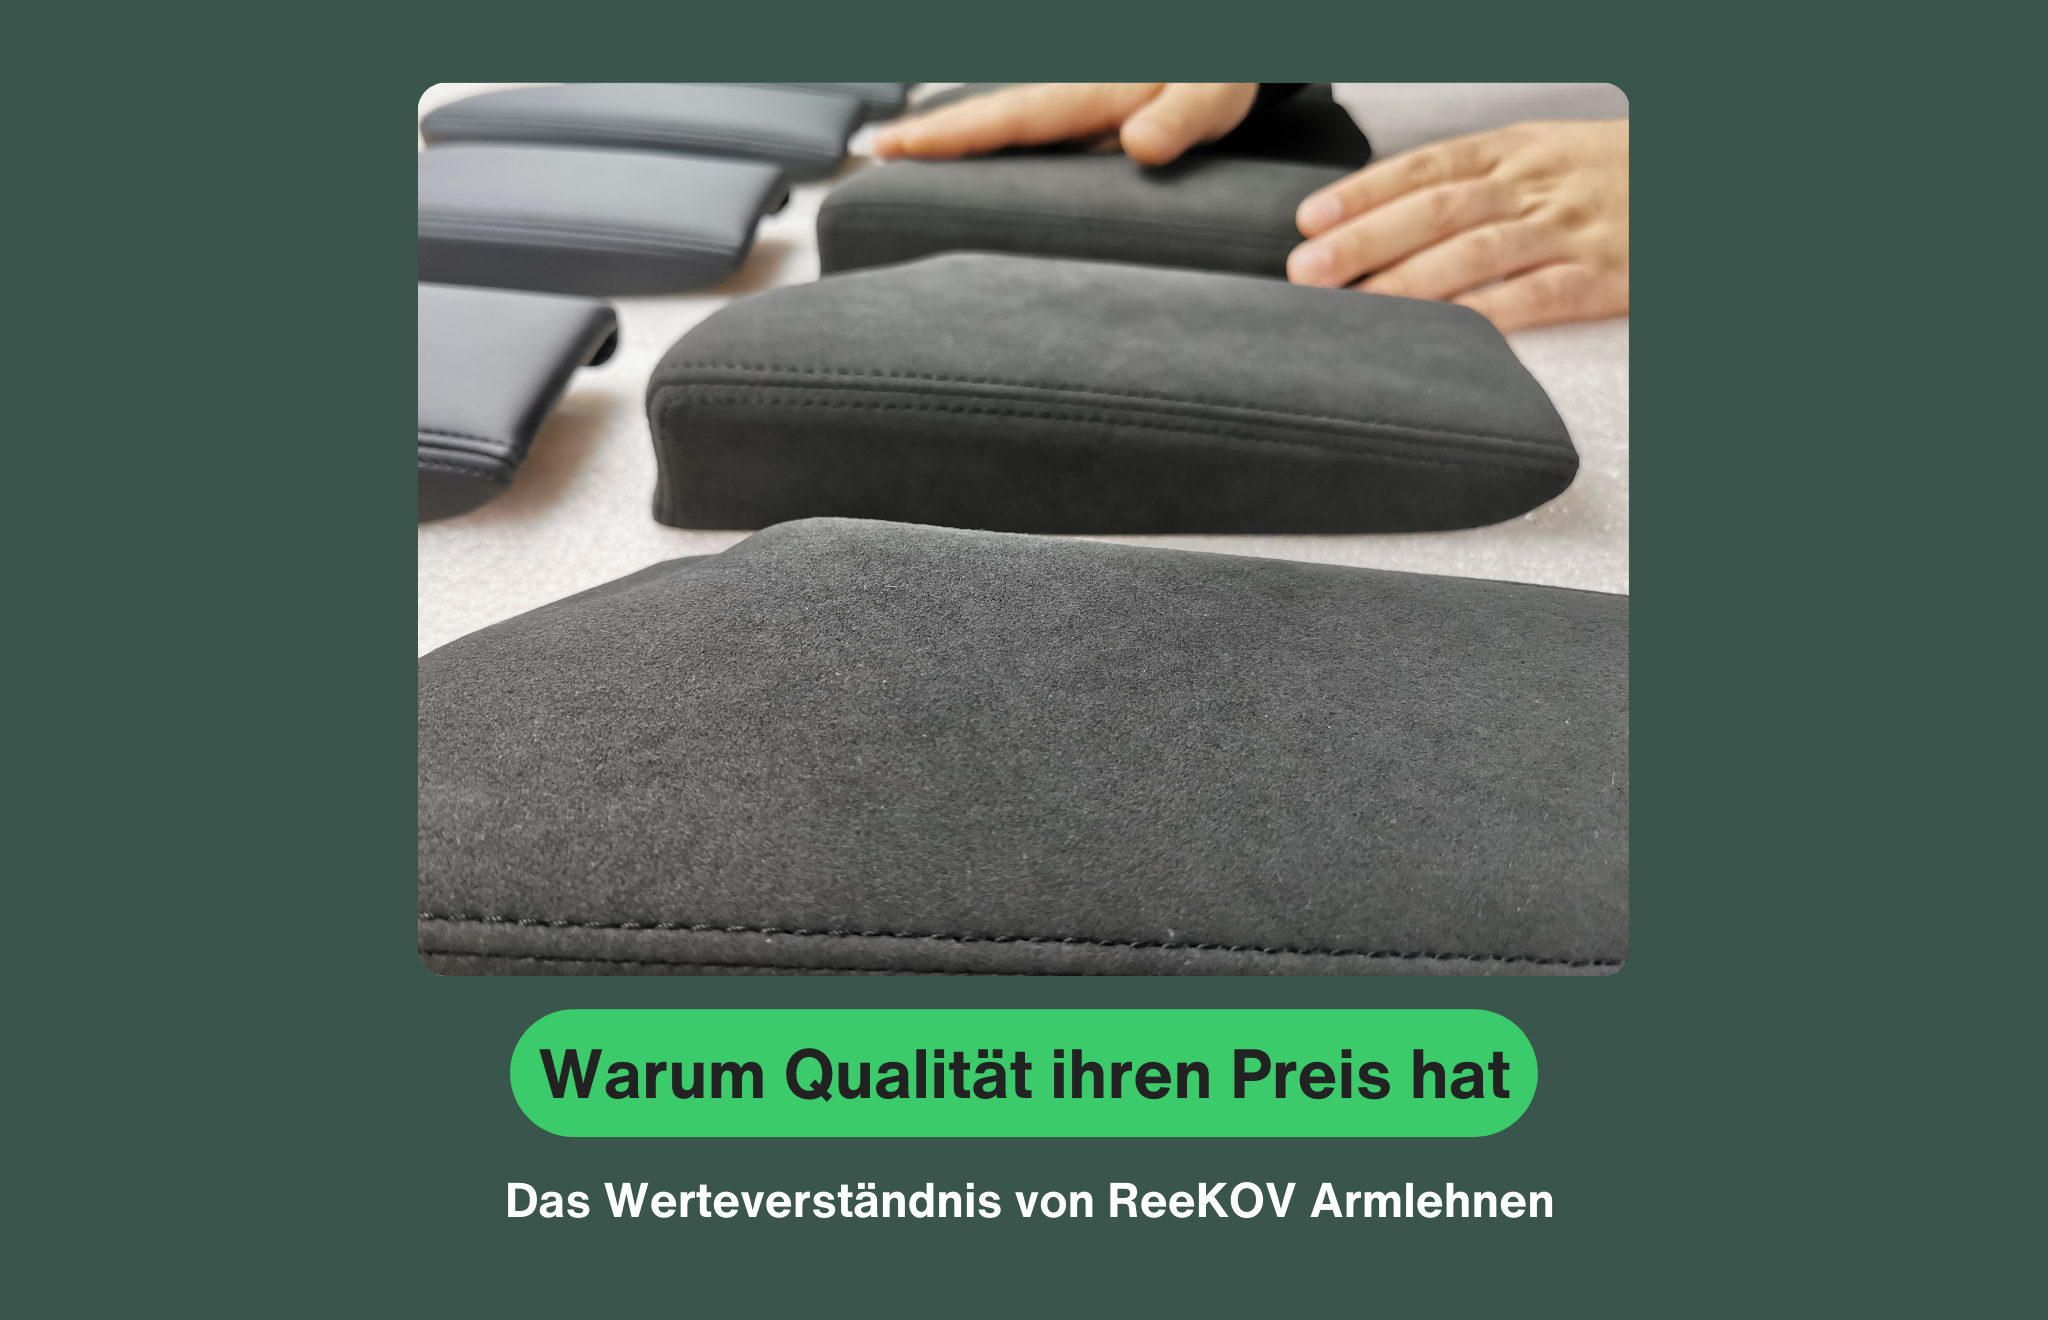 ReeKOV Armlehnen: Handgefertigt in Deutschland aus hochwertigen Materialien für maximalen Komfort und Langlebigkeit.